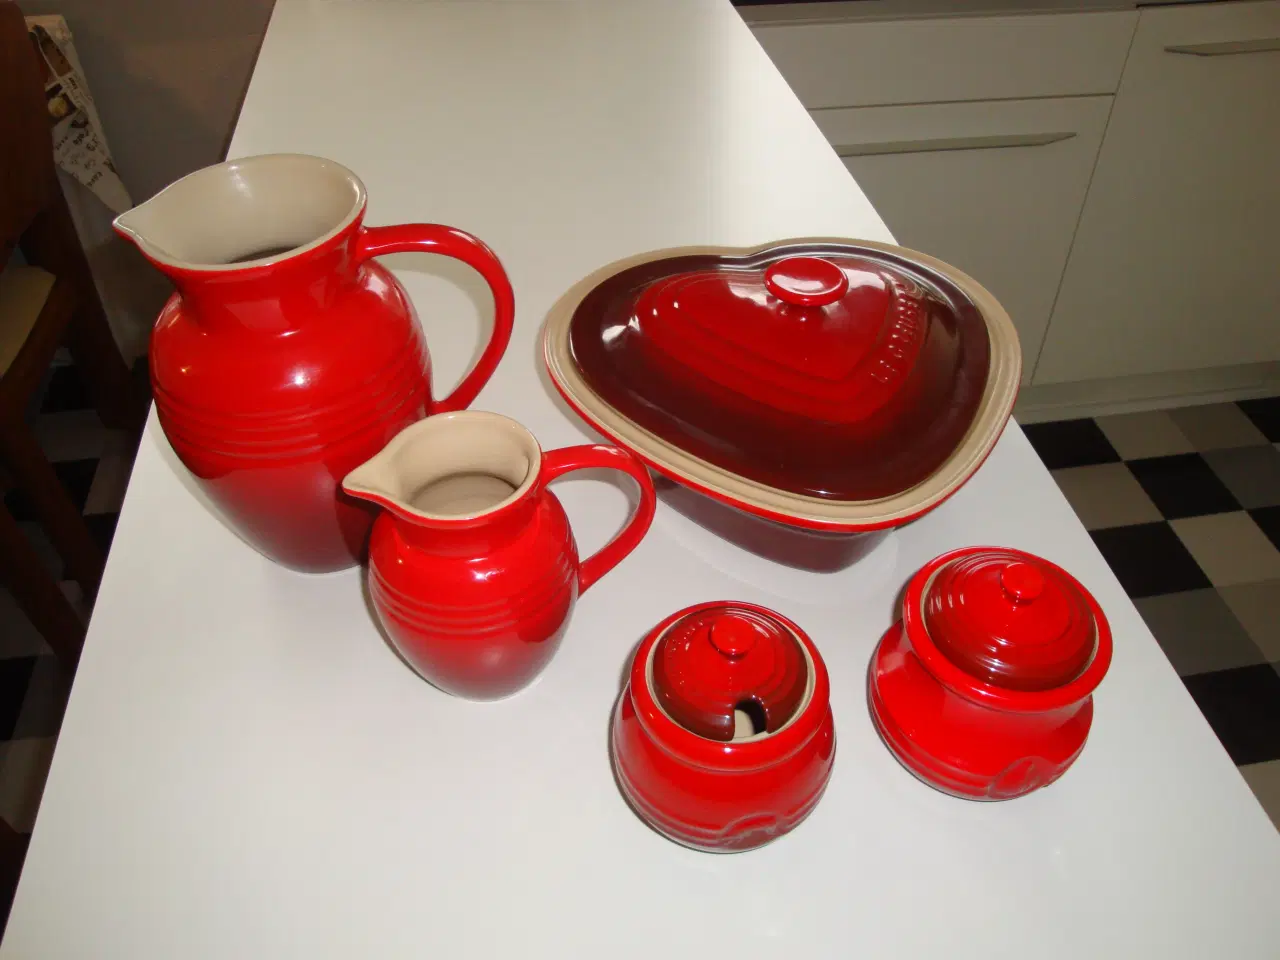 Billede 1 - Le Creuset rødt keramik til køkkenet.